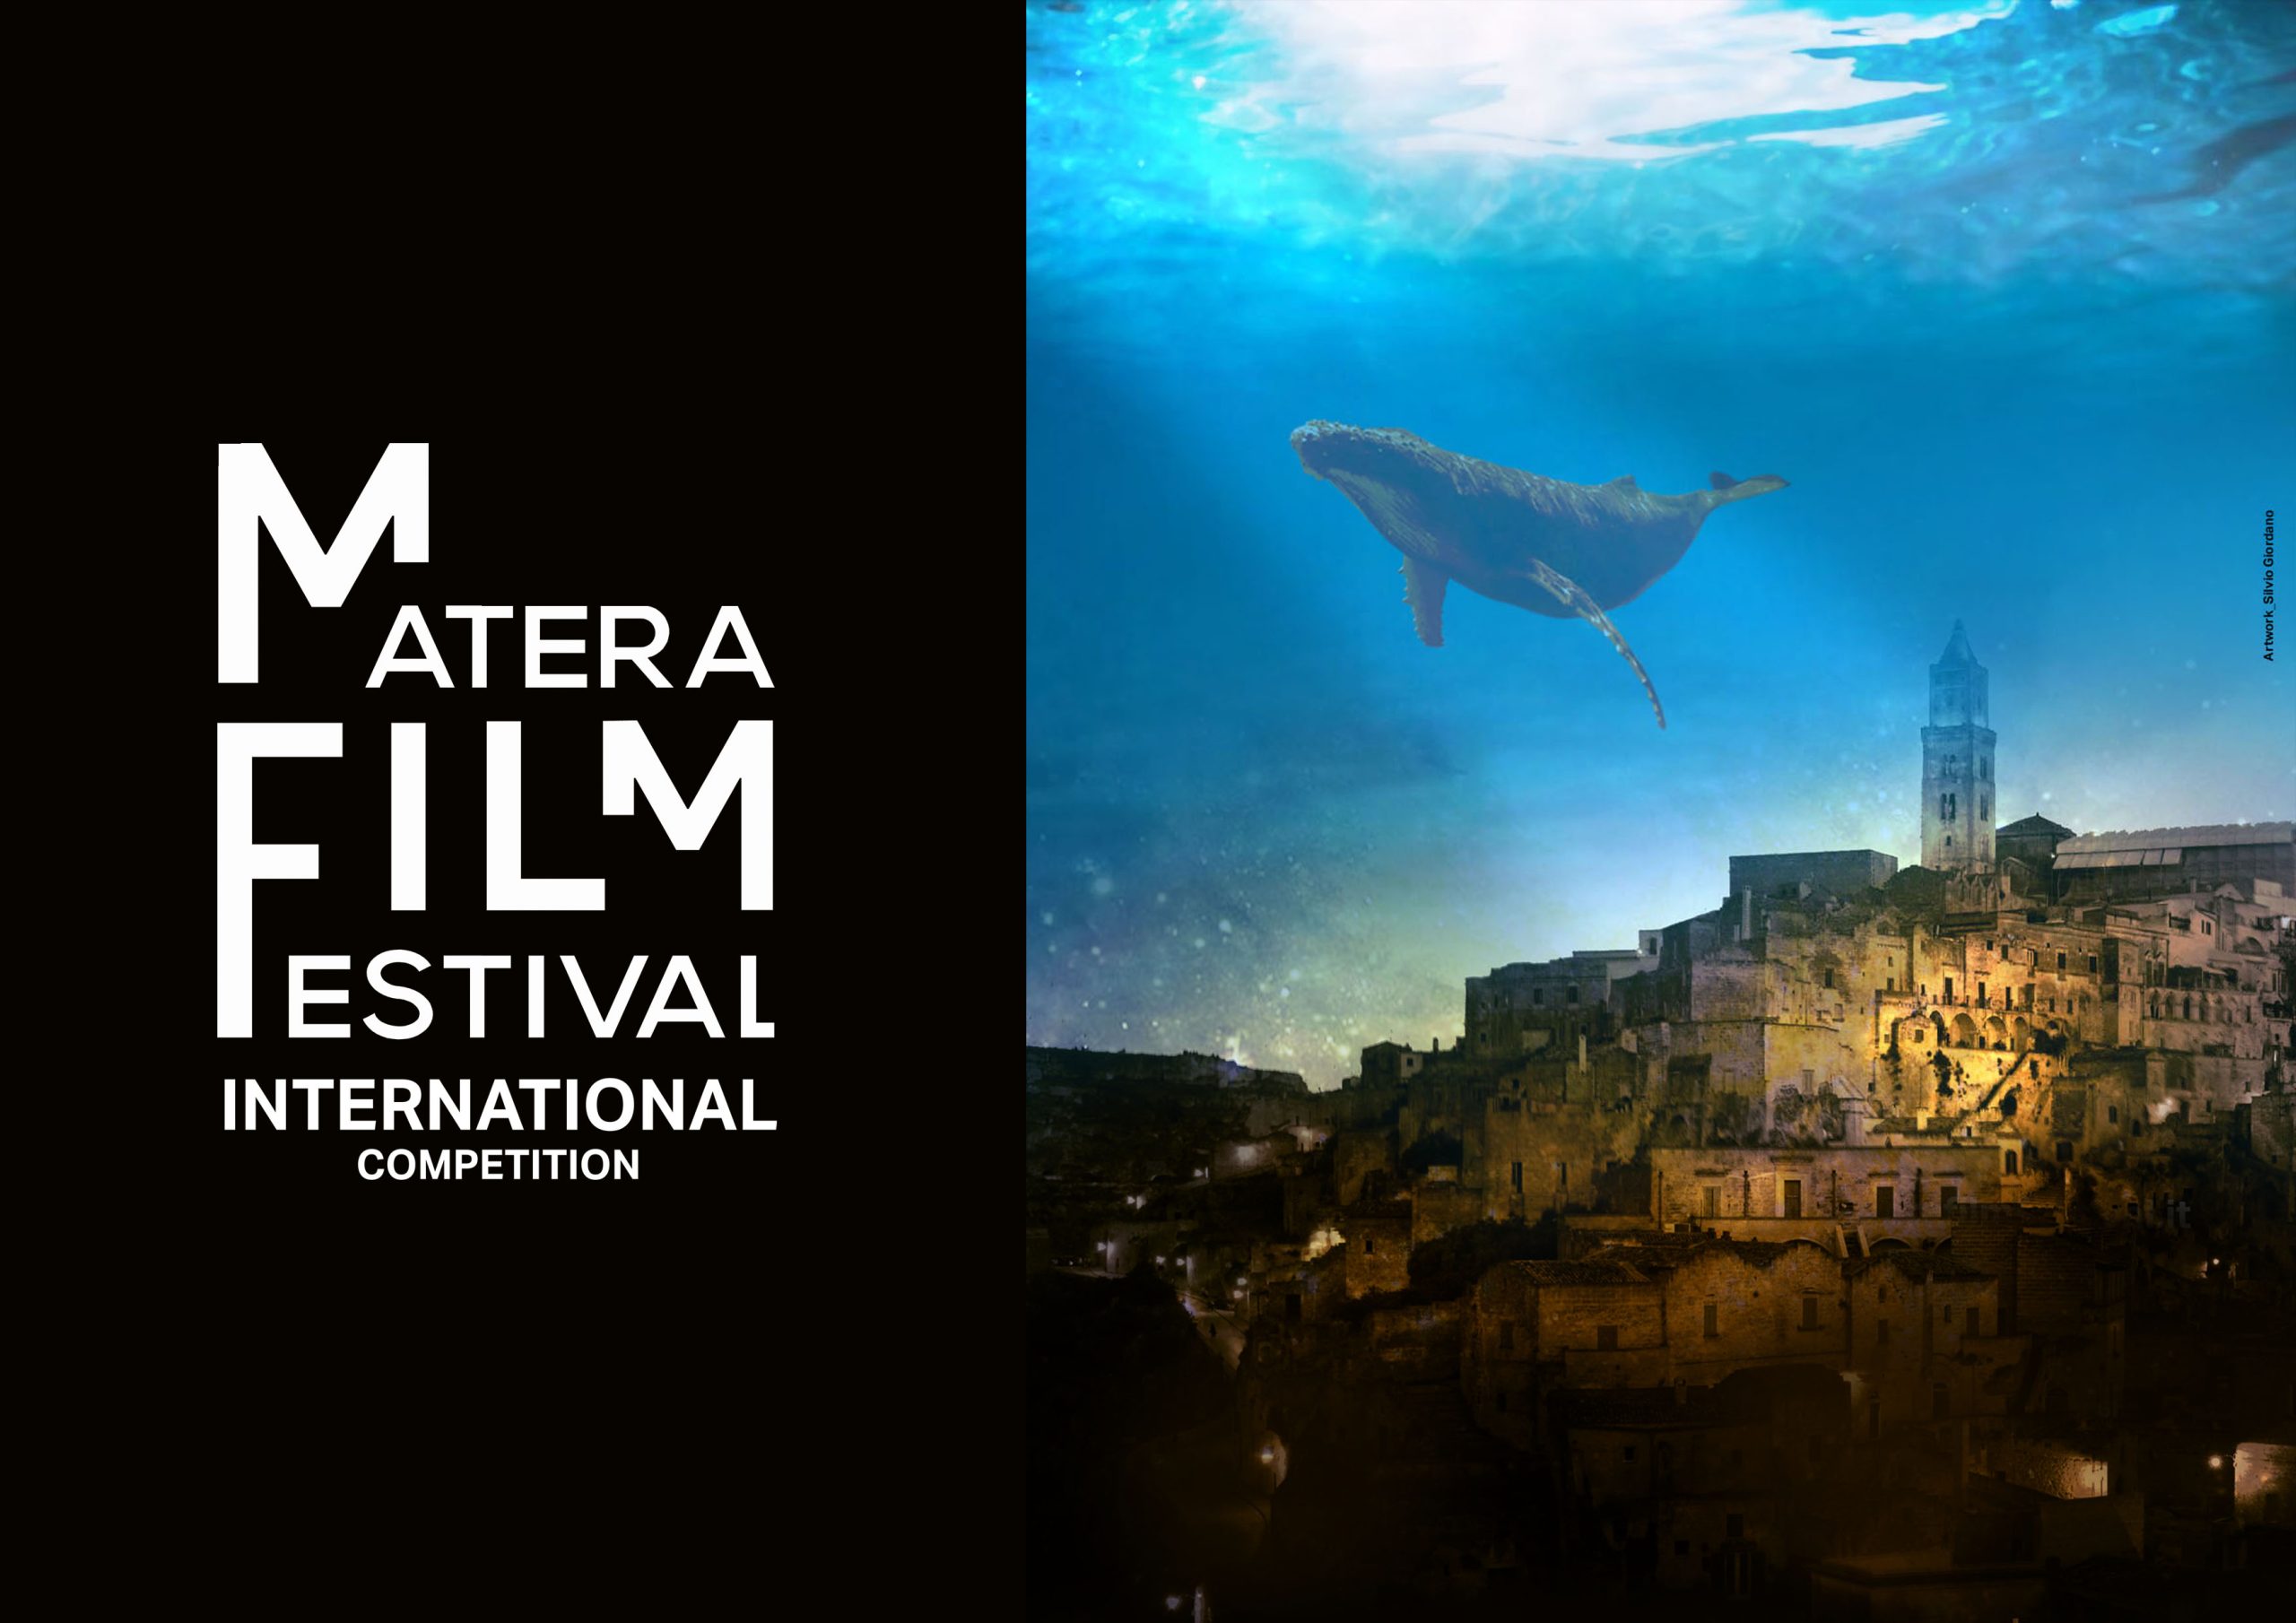 Matera Film Festival: prorogata al 7 agosto la data per le iscrizioni al concorso internazionale di lungometraggi, documentari e cortometraggi